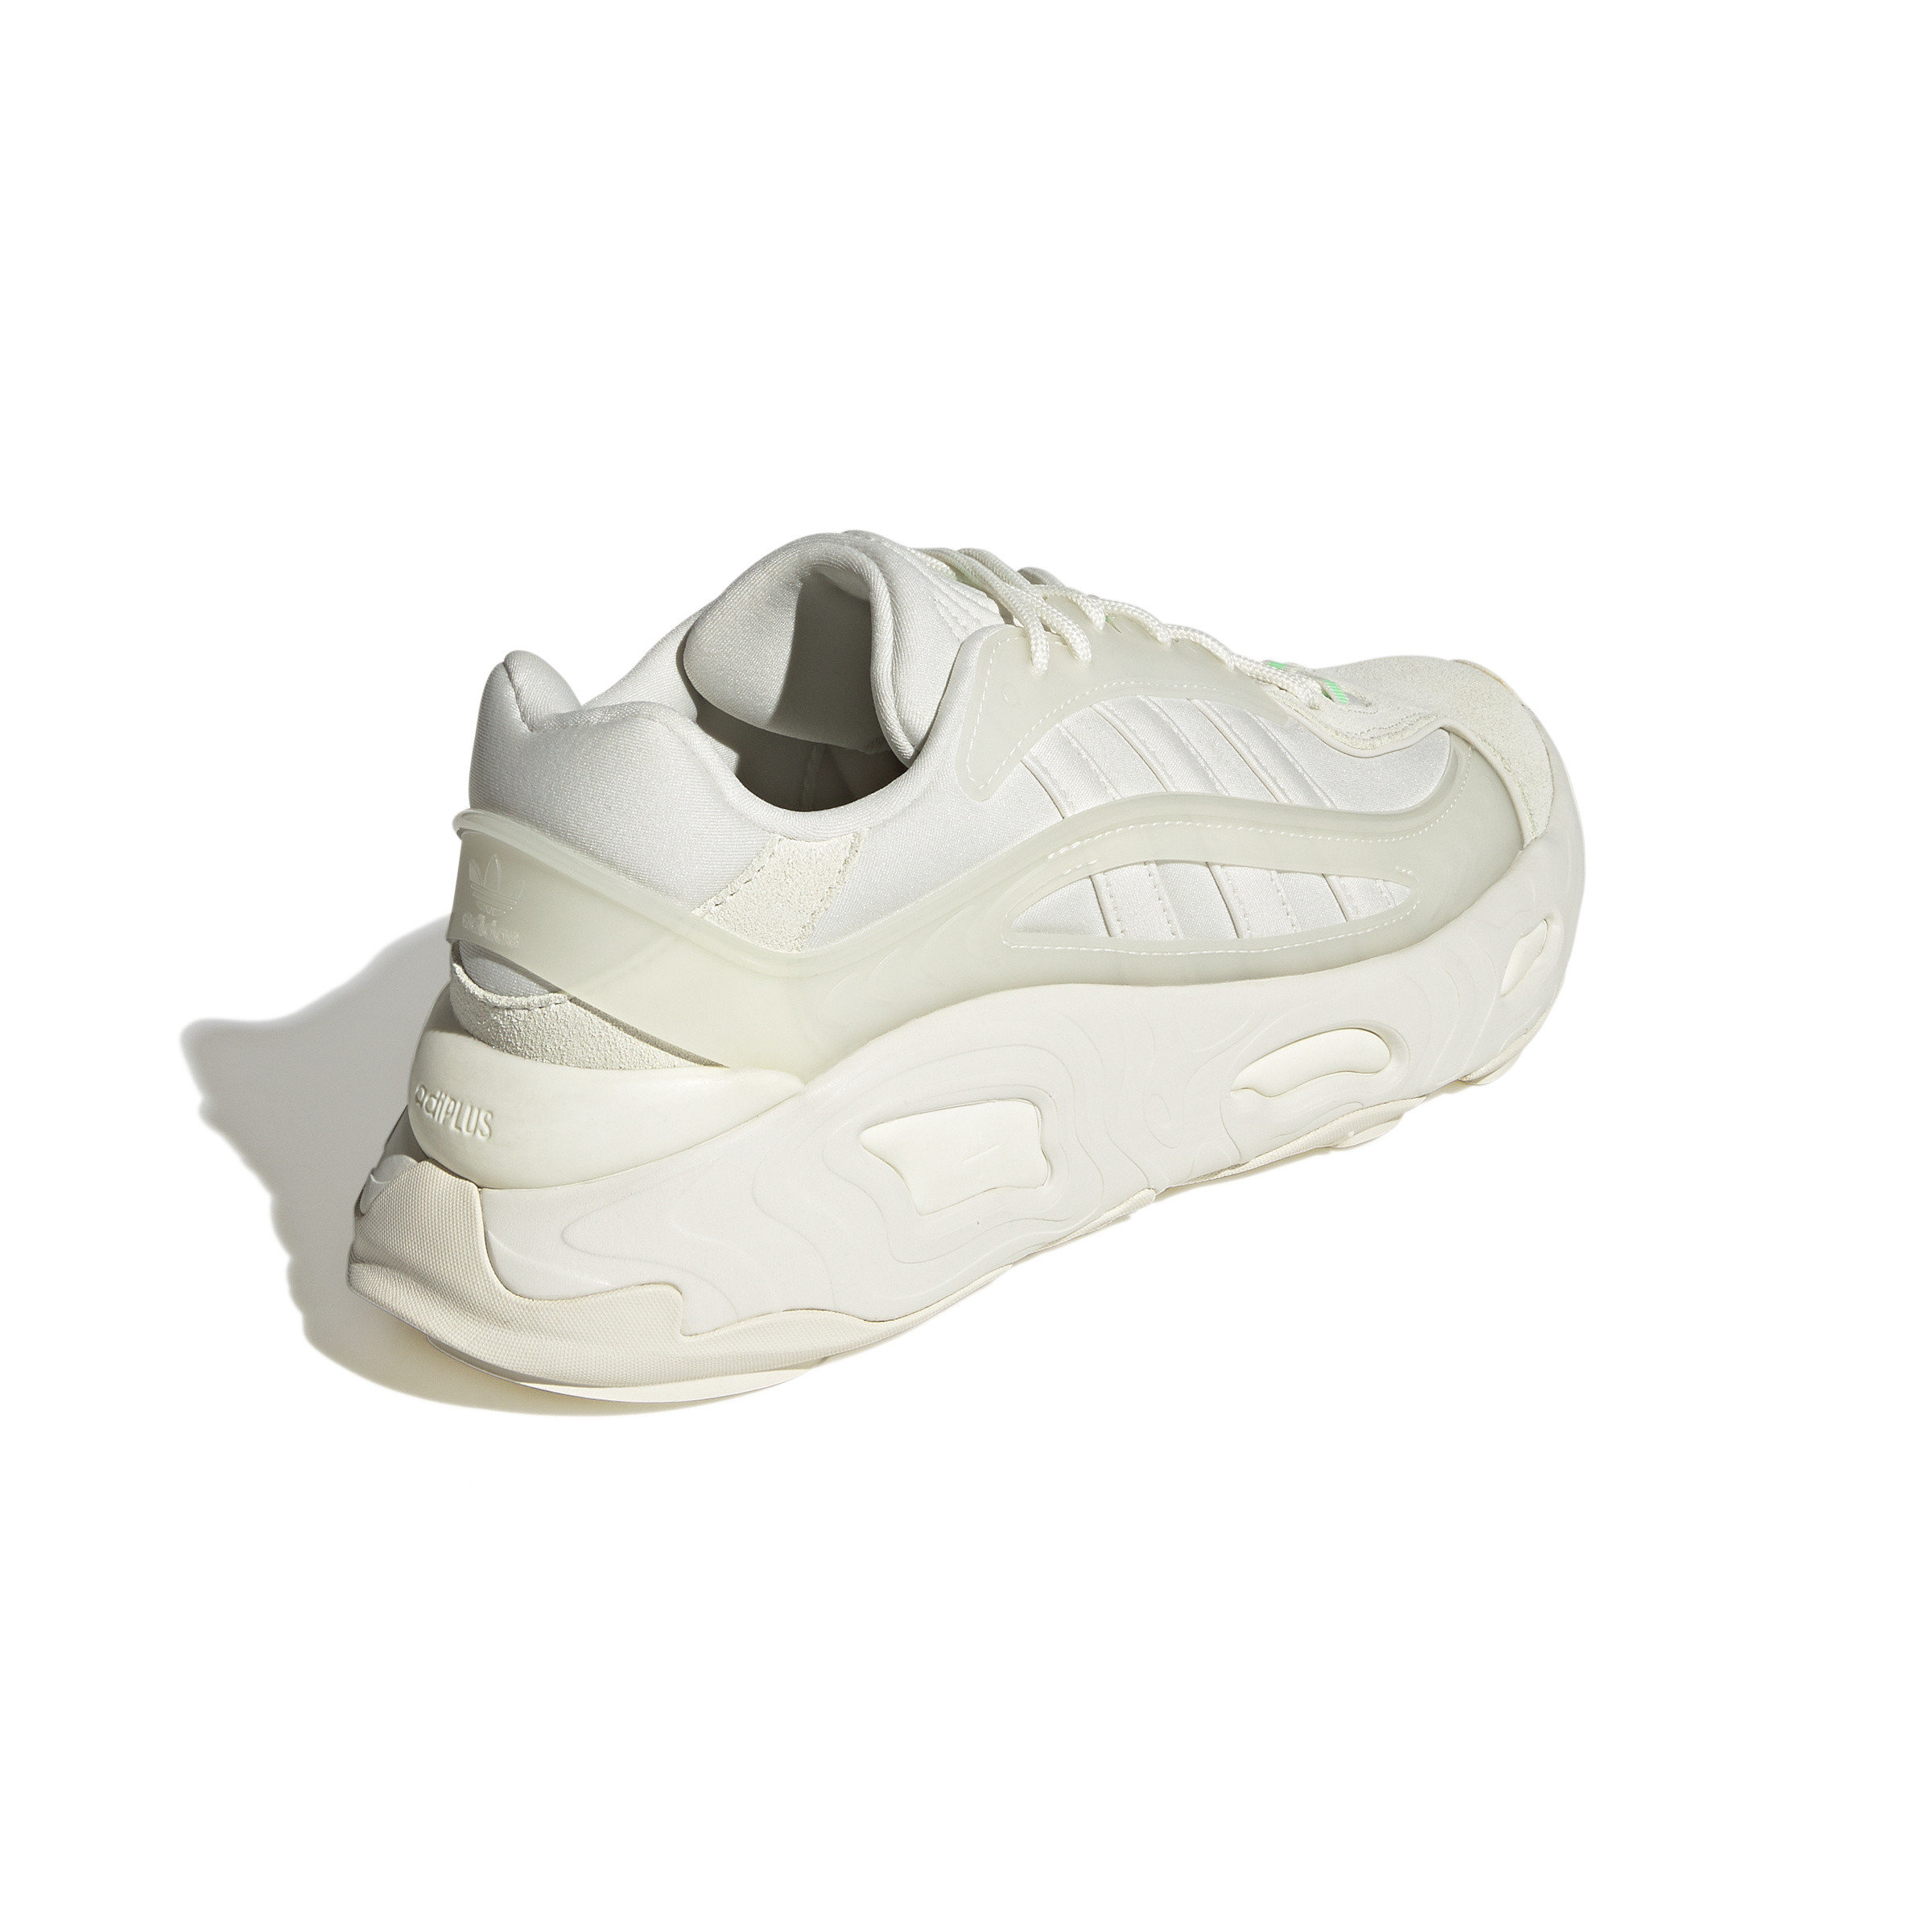 Adidas - Oznova Shoes, White, large image number 5